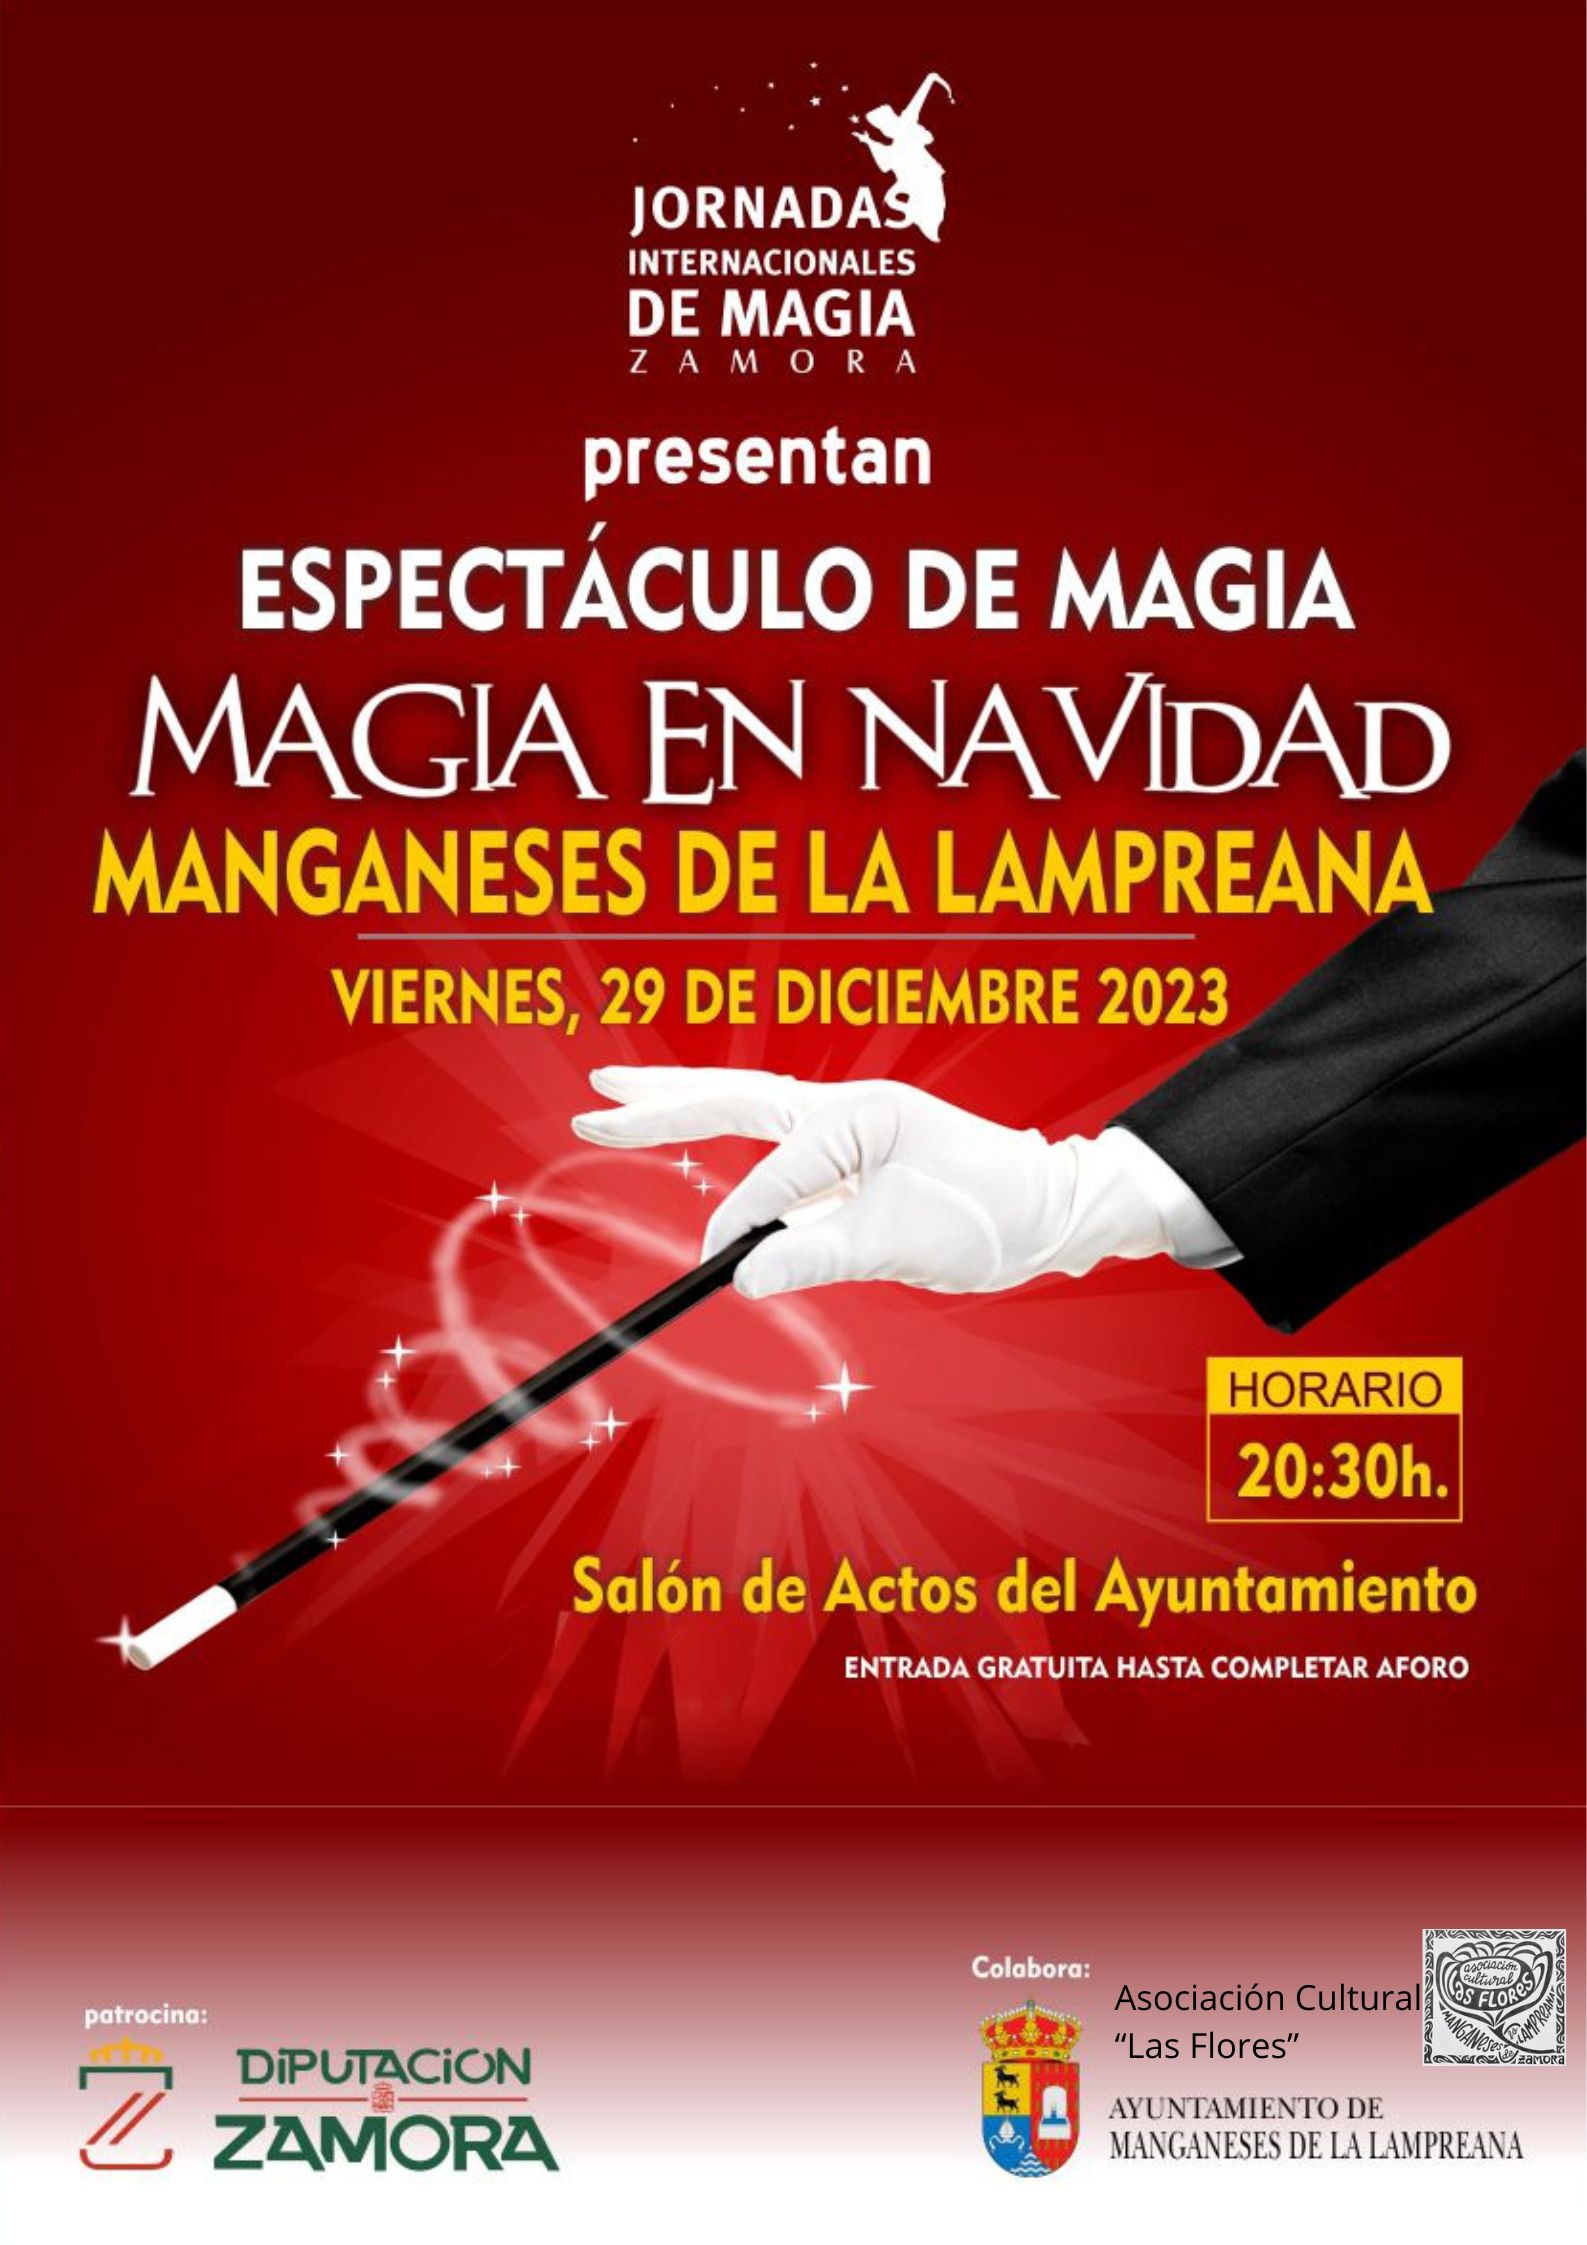 Espectáculo de Magia. Jornadas Internacionales de Magia en Zamora.